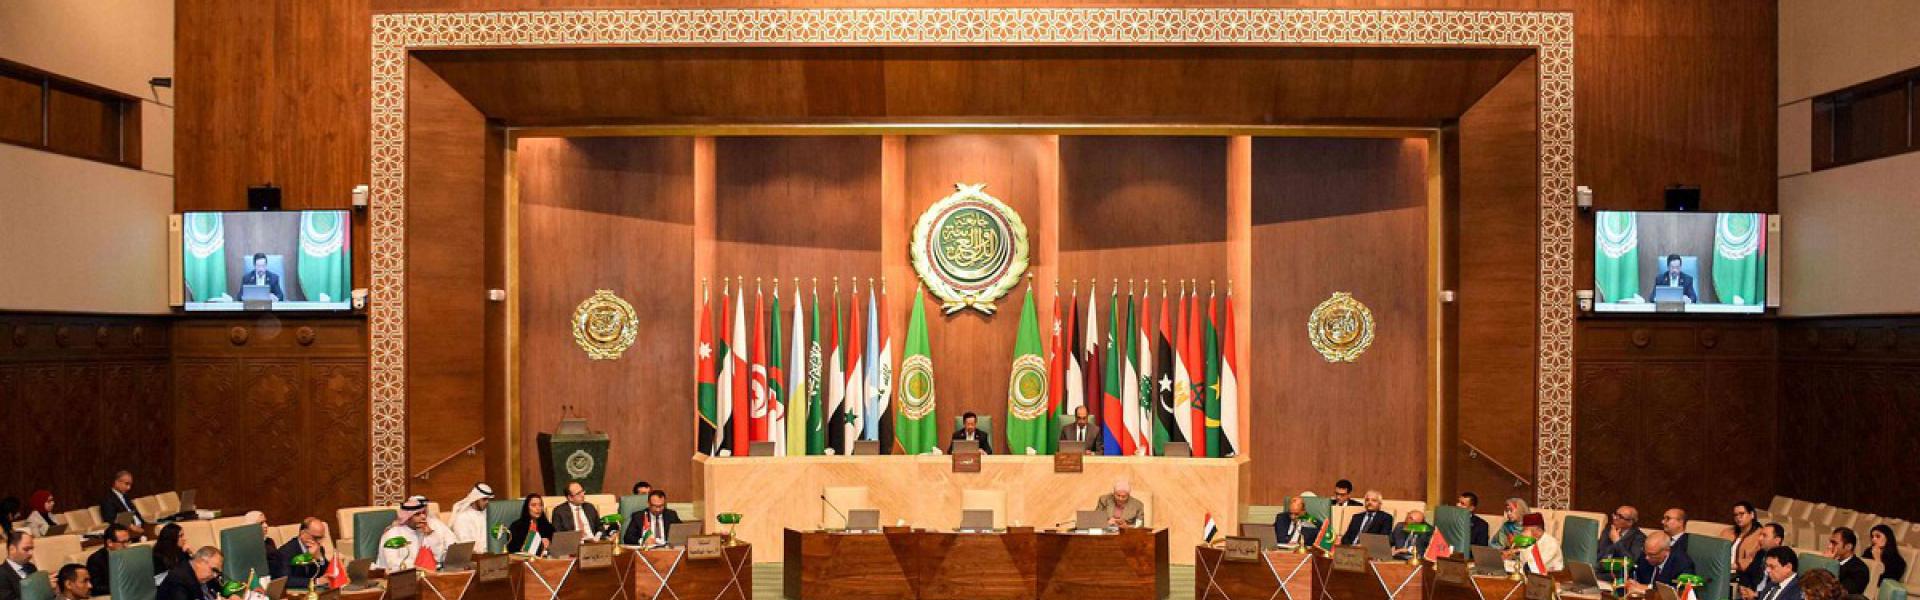 الجامعة العربية ستَبقى بعيدة عن سيادة الدول العربية الأعضاء على أراضيها 